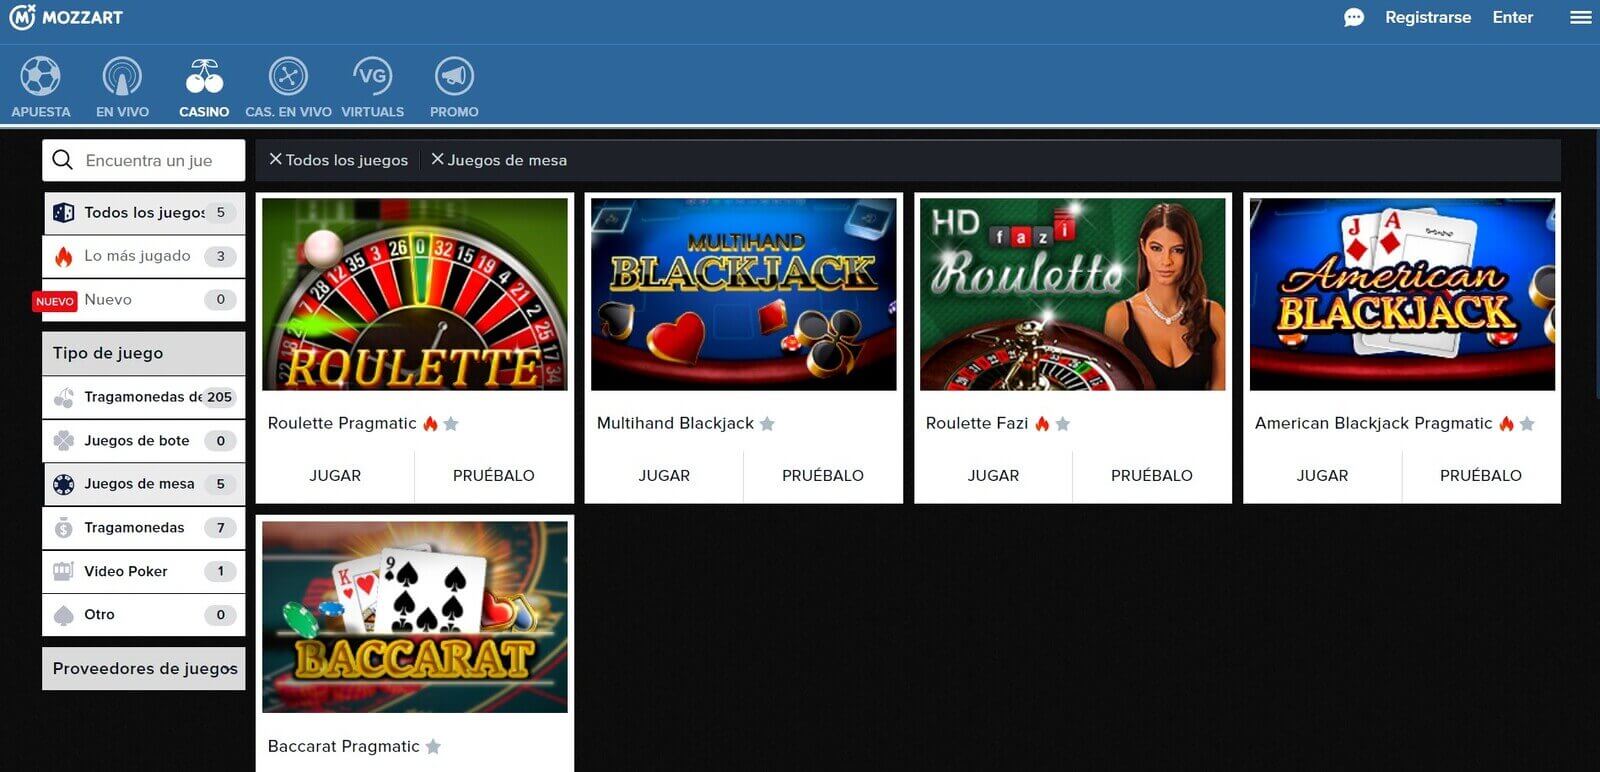 Juegos de casino MozzartBet online en Colombia